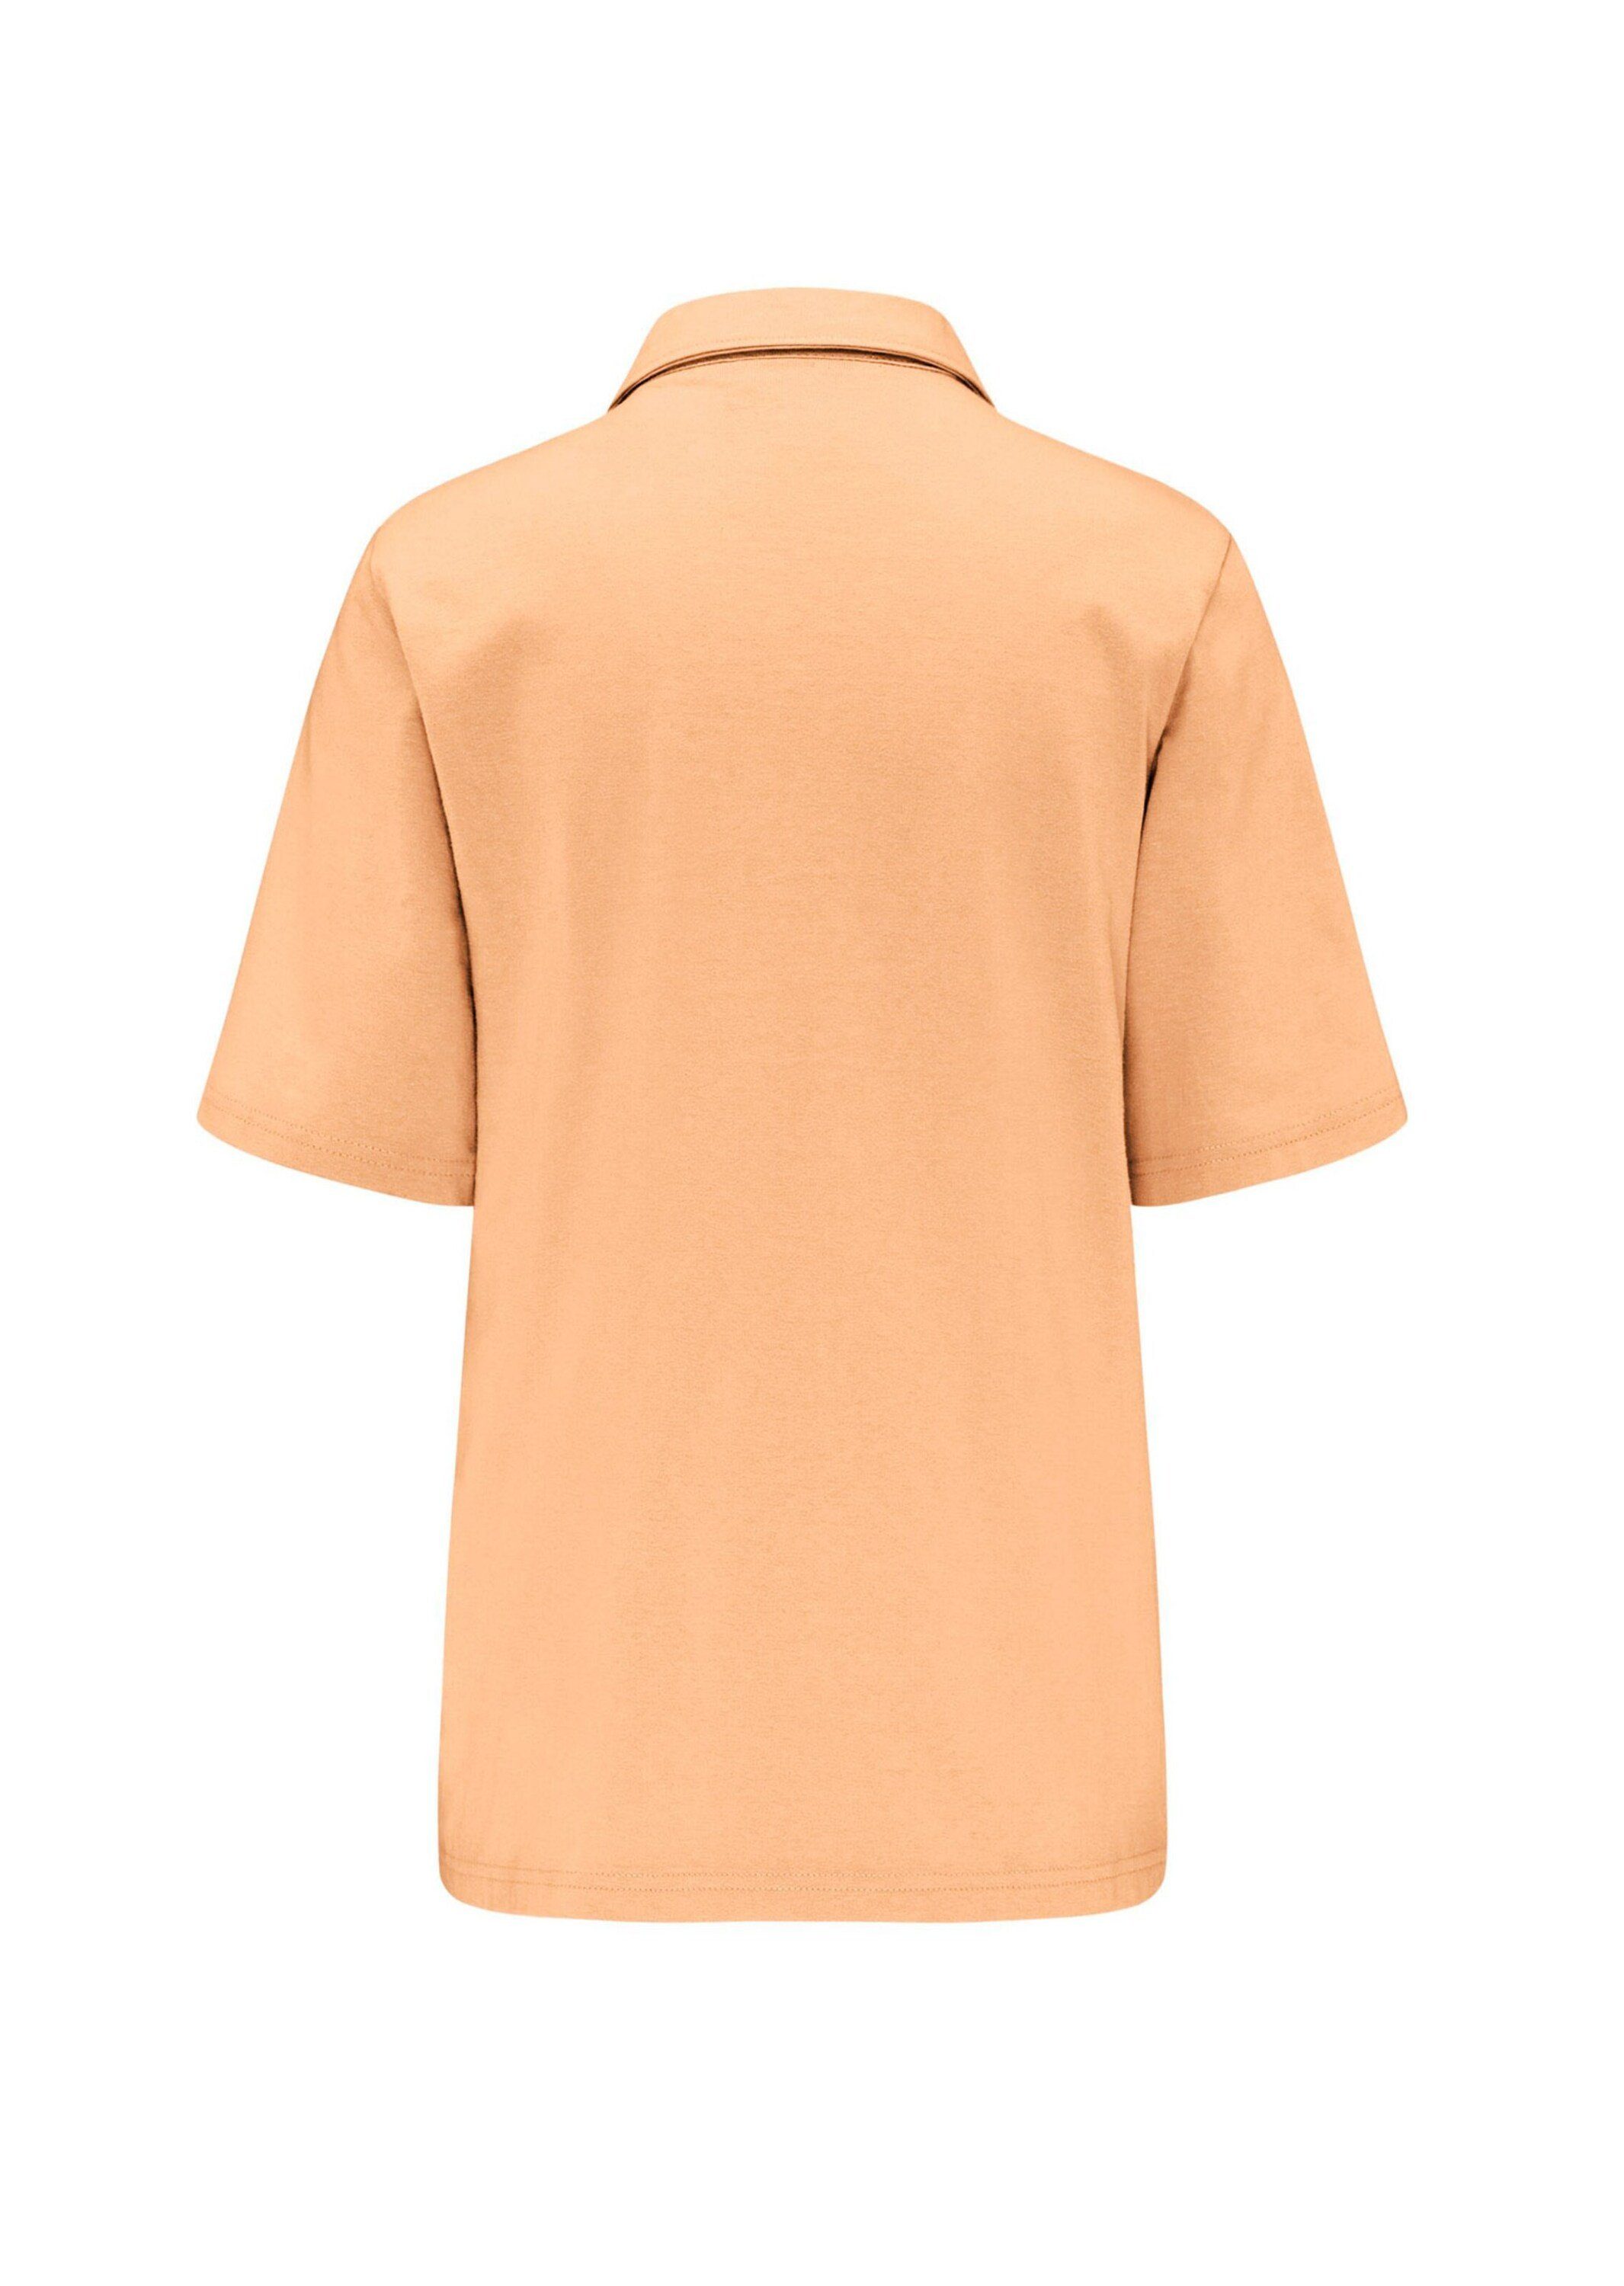 Stretchbequemes Kurzgröße: Poloshirt GOLDNER melba Poloshirt